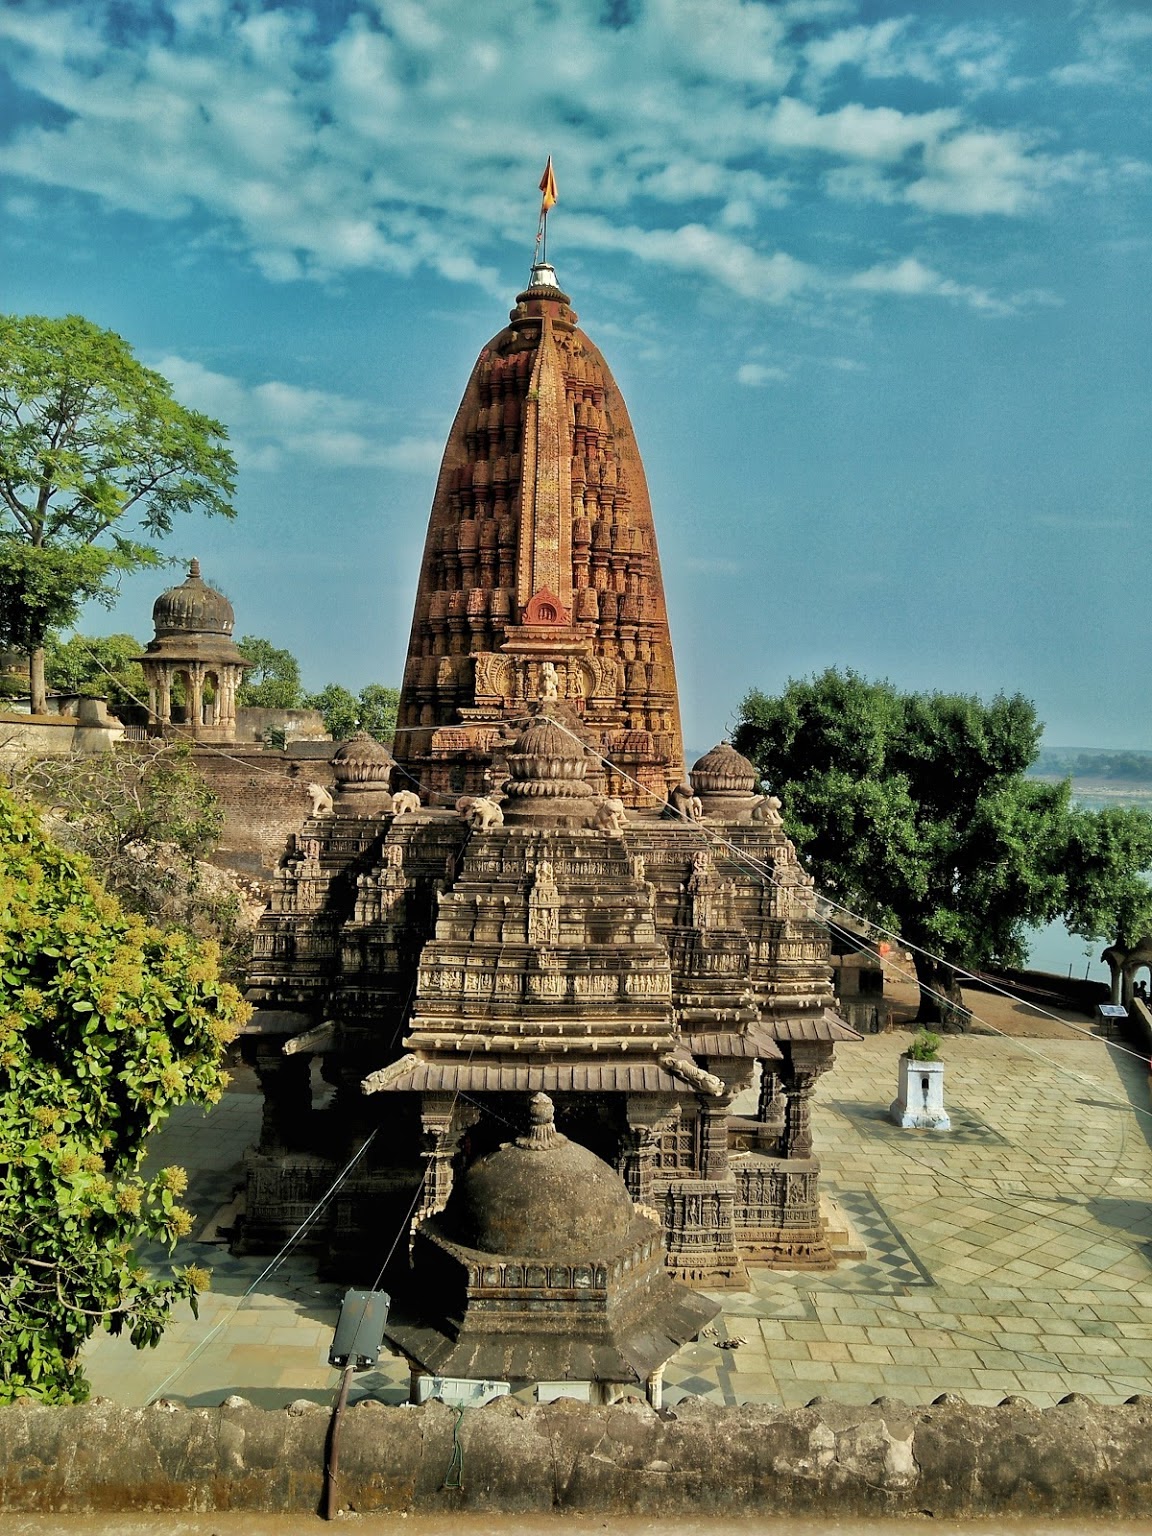 நீமவார் சித்தேஸ்வரர் கோவில், மத்தியப் பிரதேசம்